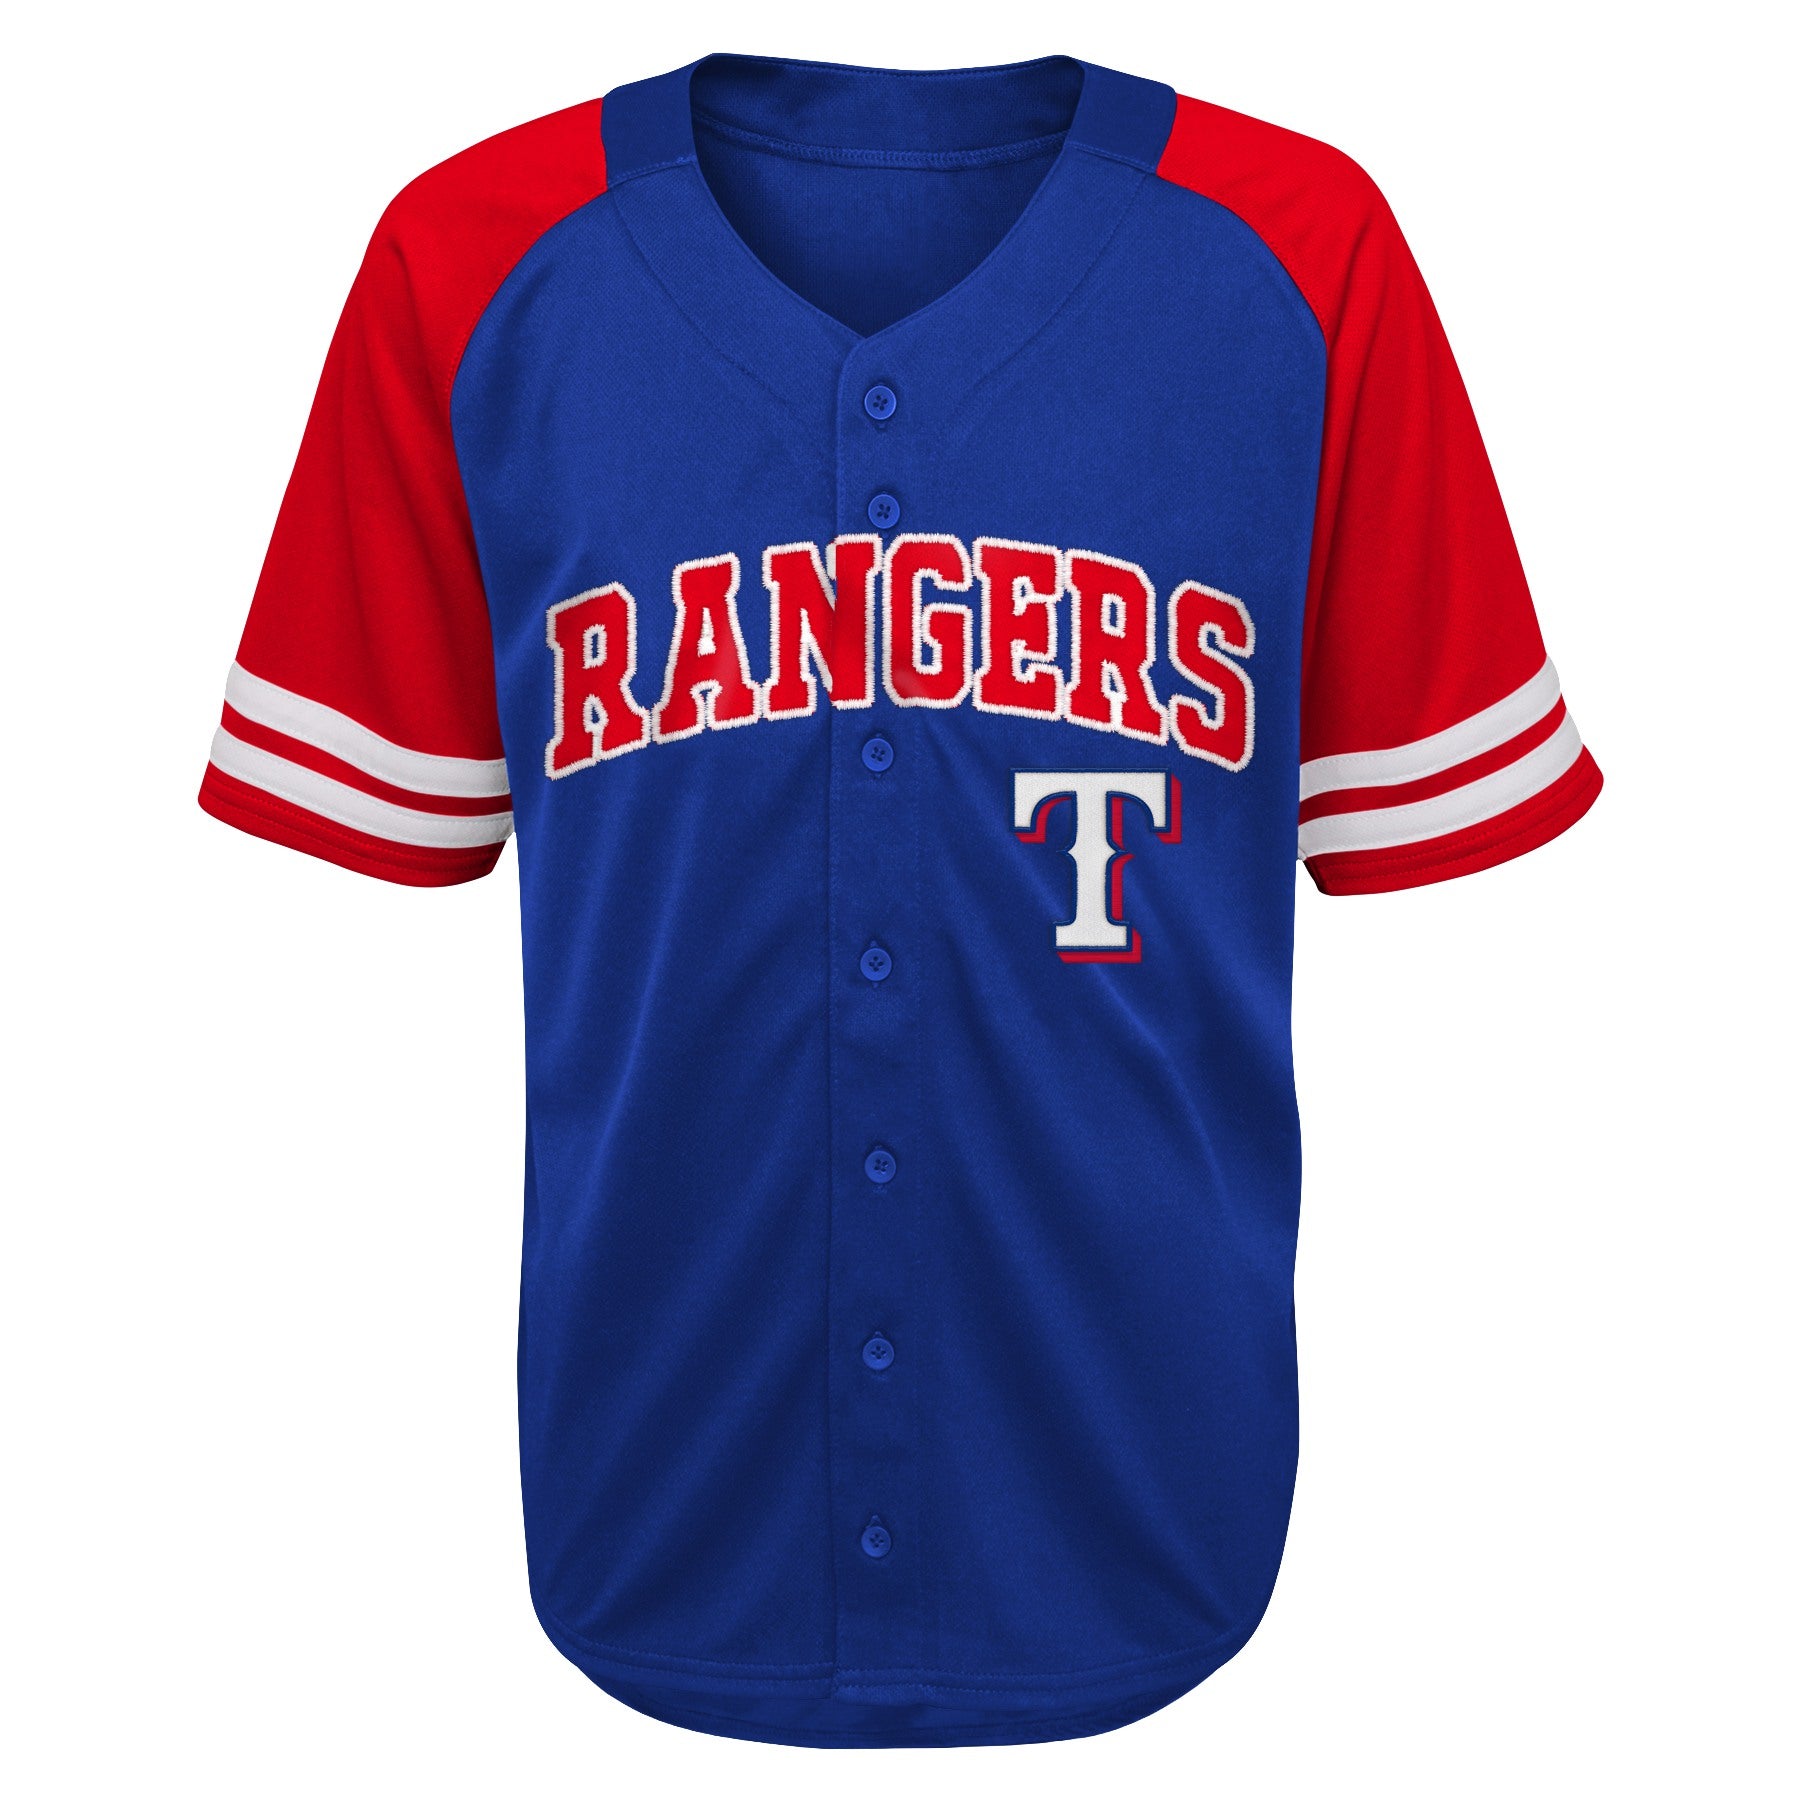 Outerstuff Kids MLB Texas Rangers Button Up Baseball Team Home